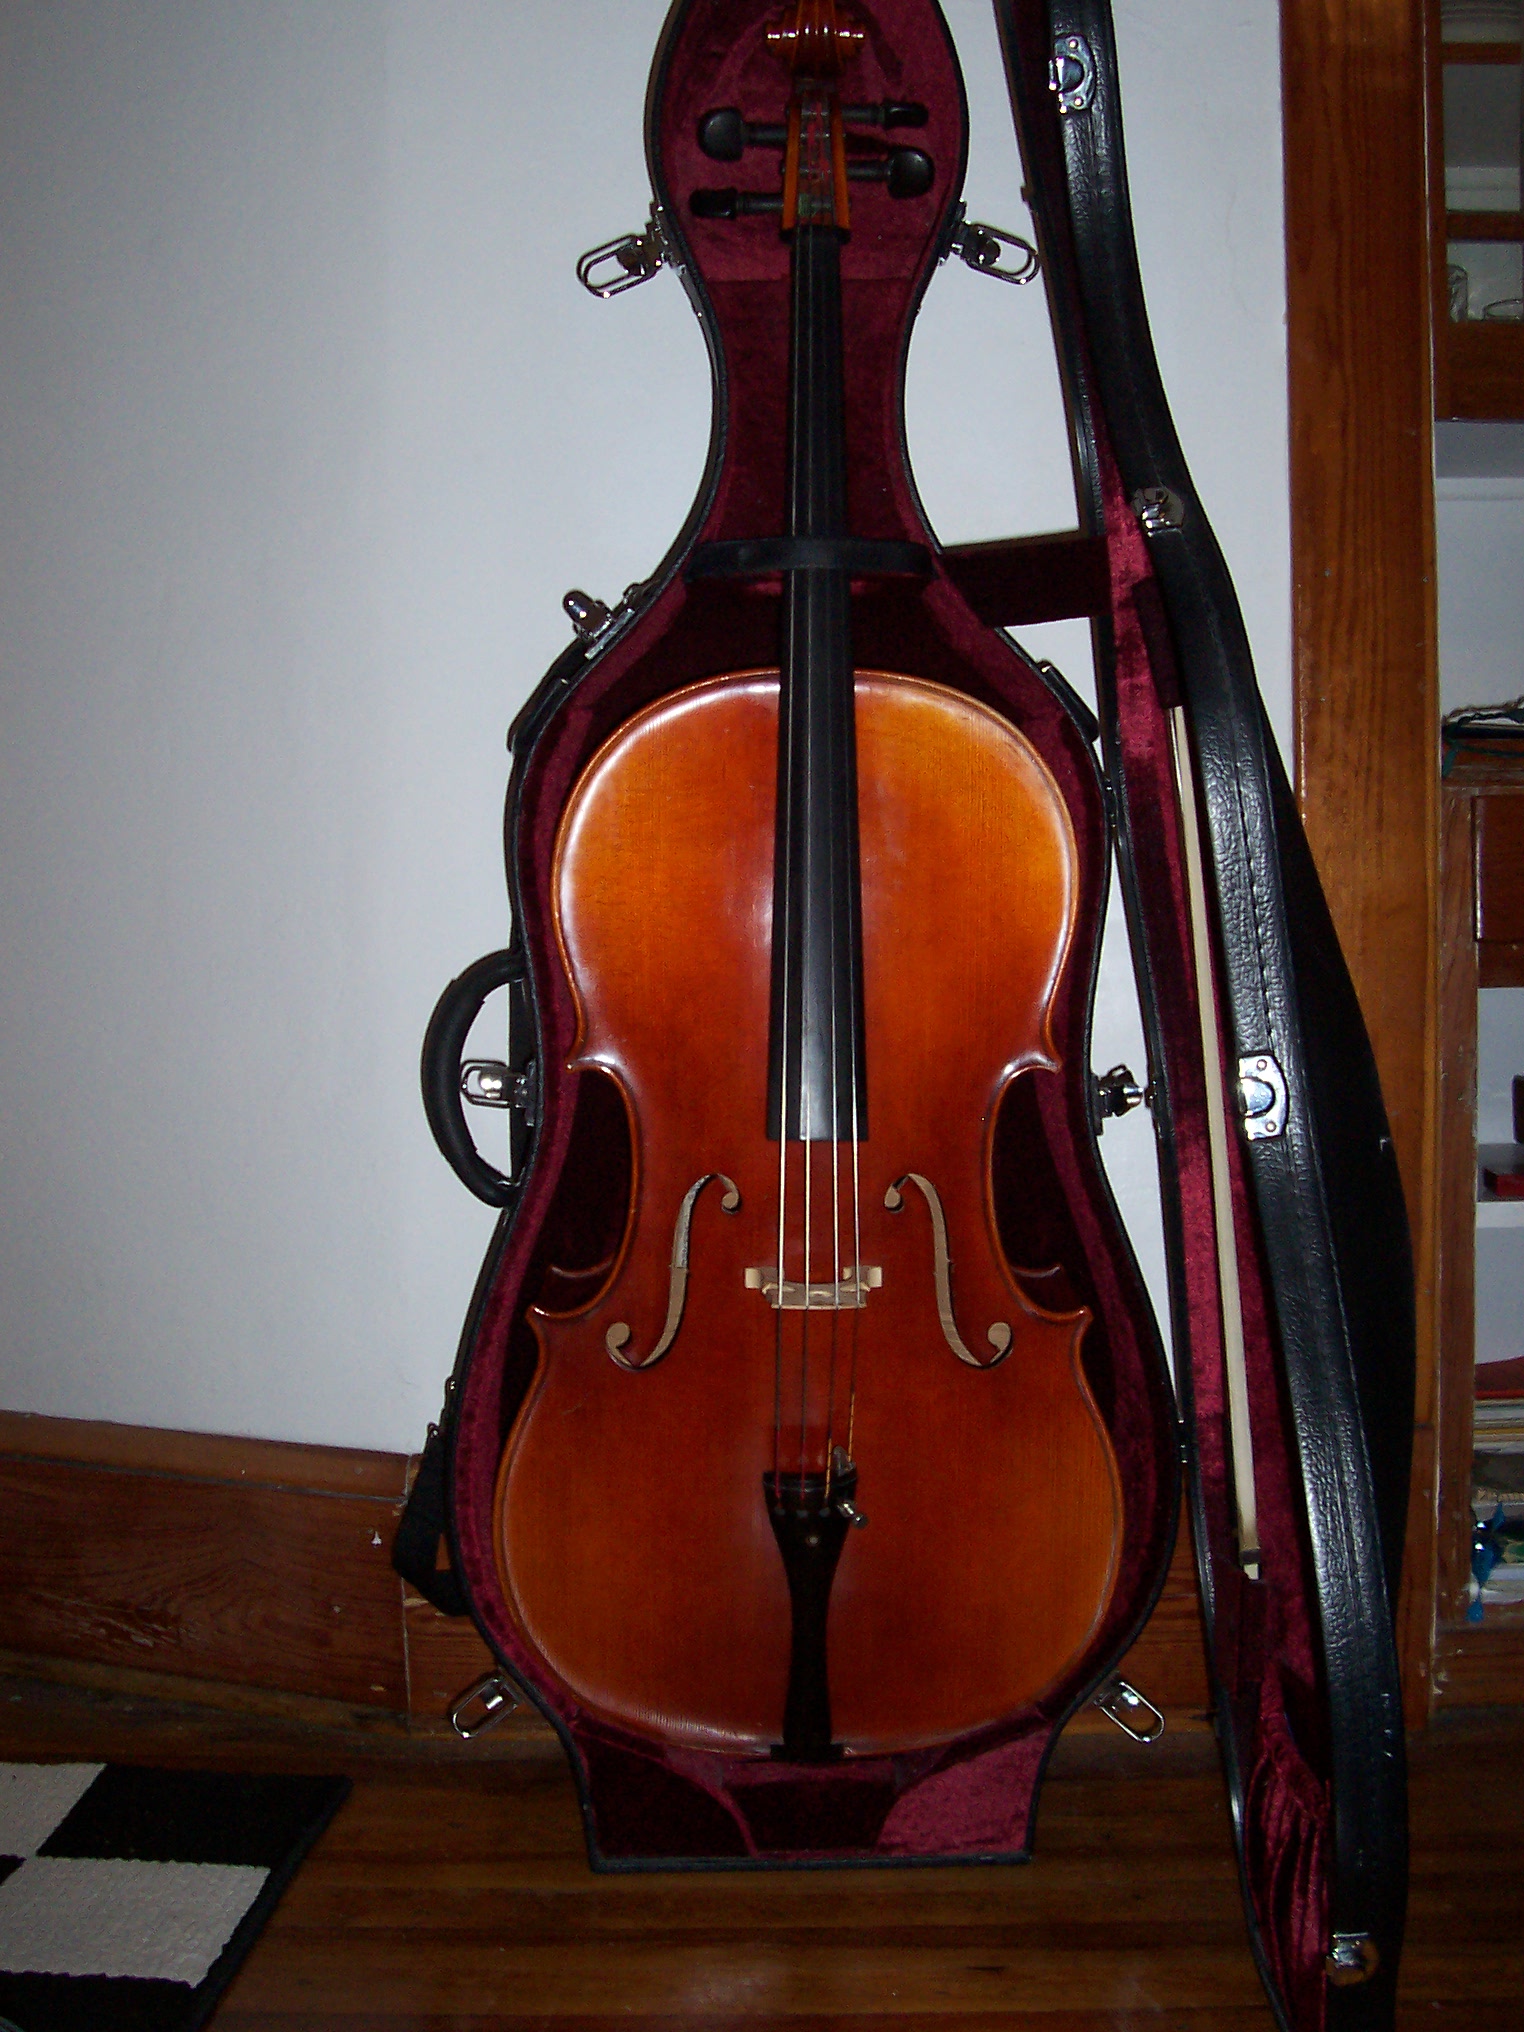 Cello for sale!